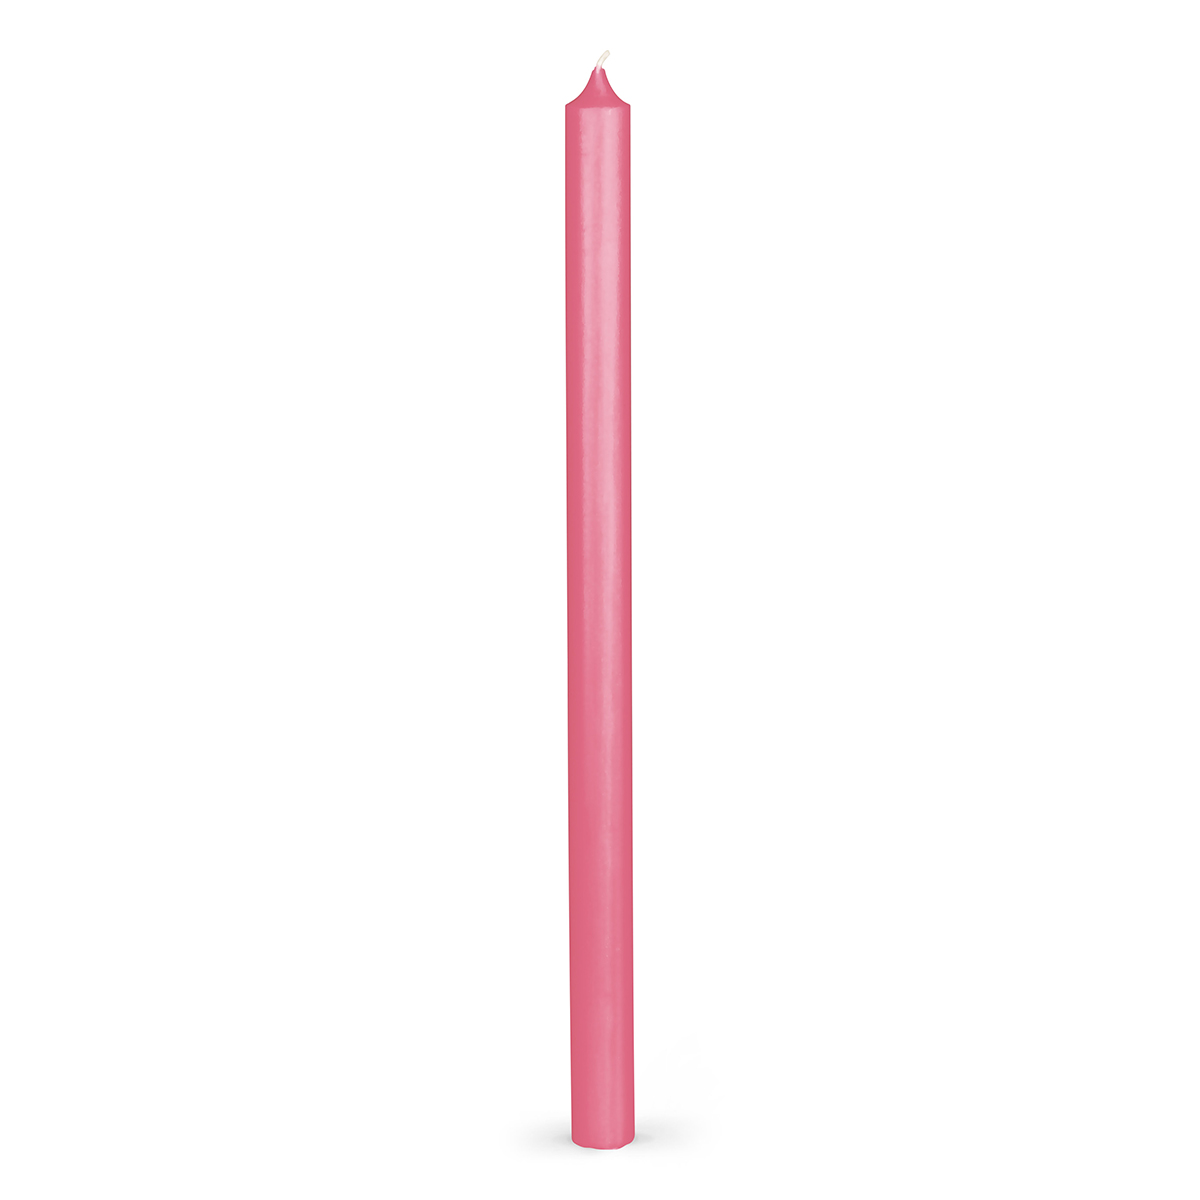 Stabkerzen Rustic - durchgefärbt - 340/21 mm - in 33 Farben - 31 pink